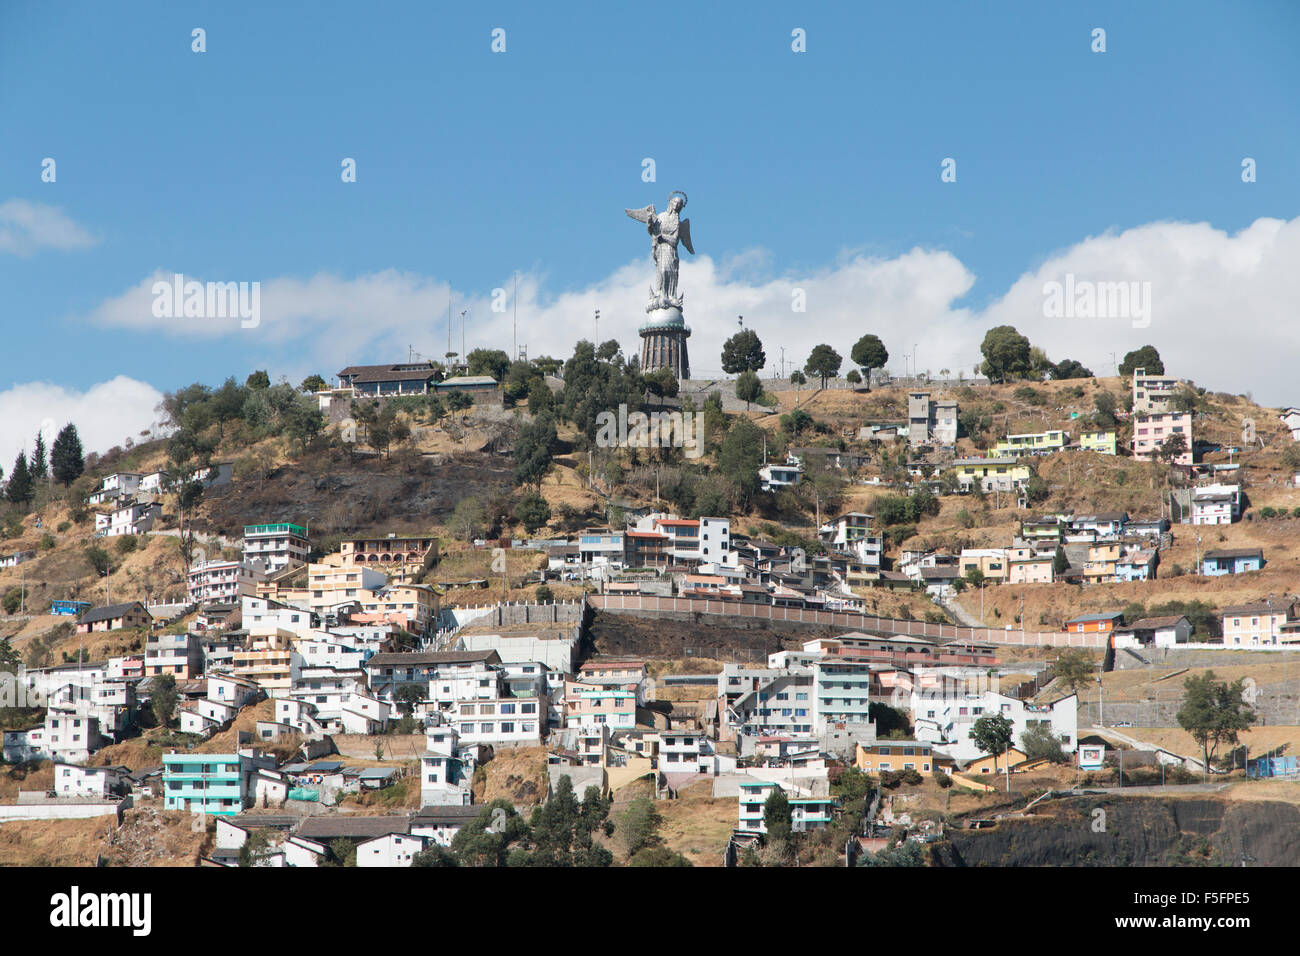 Ad un'altitudine di 2.850 metri (9,350 ft) sopra il livello del mare, Quito è il più alto funzionario città capitale del mondo. Foto Stock